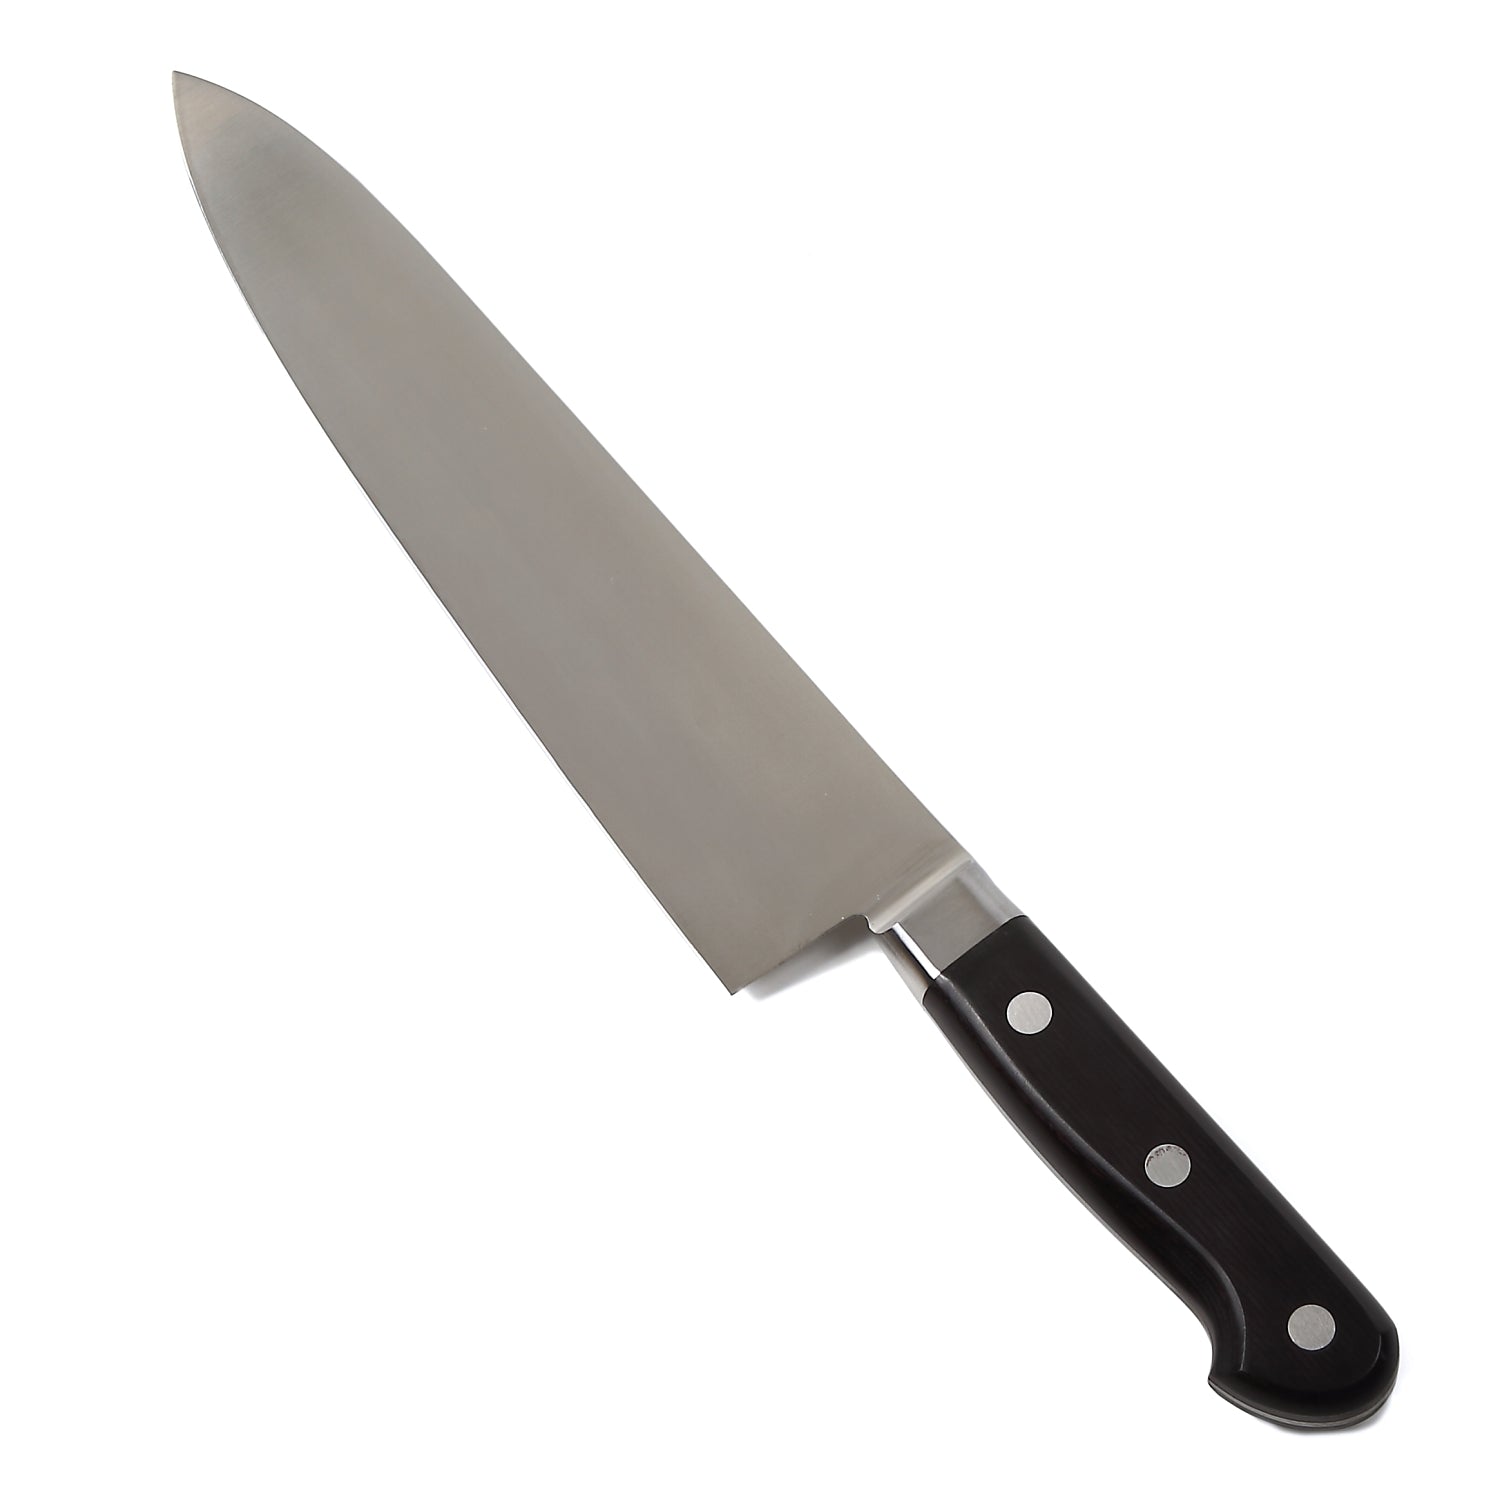 Syosaku Japanese Best Sharp Kitchen Chef Knife INOX AUS-8A Stainless Steel Black Pakkawood Handle, Gyuto 9.5-inch (240mm) - Syosaku-Japan